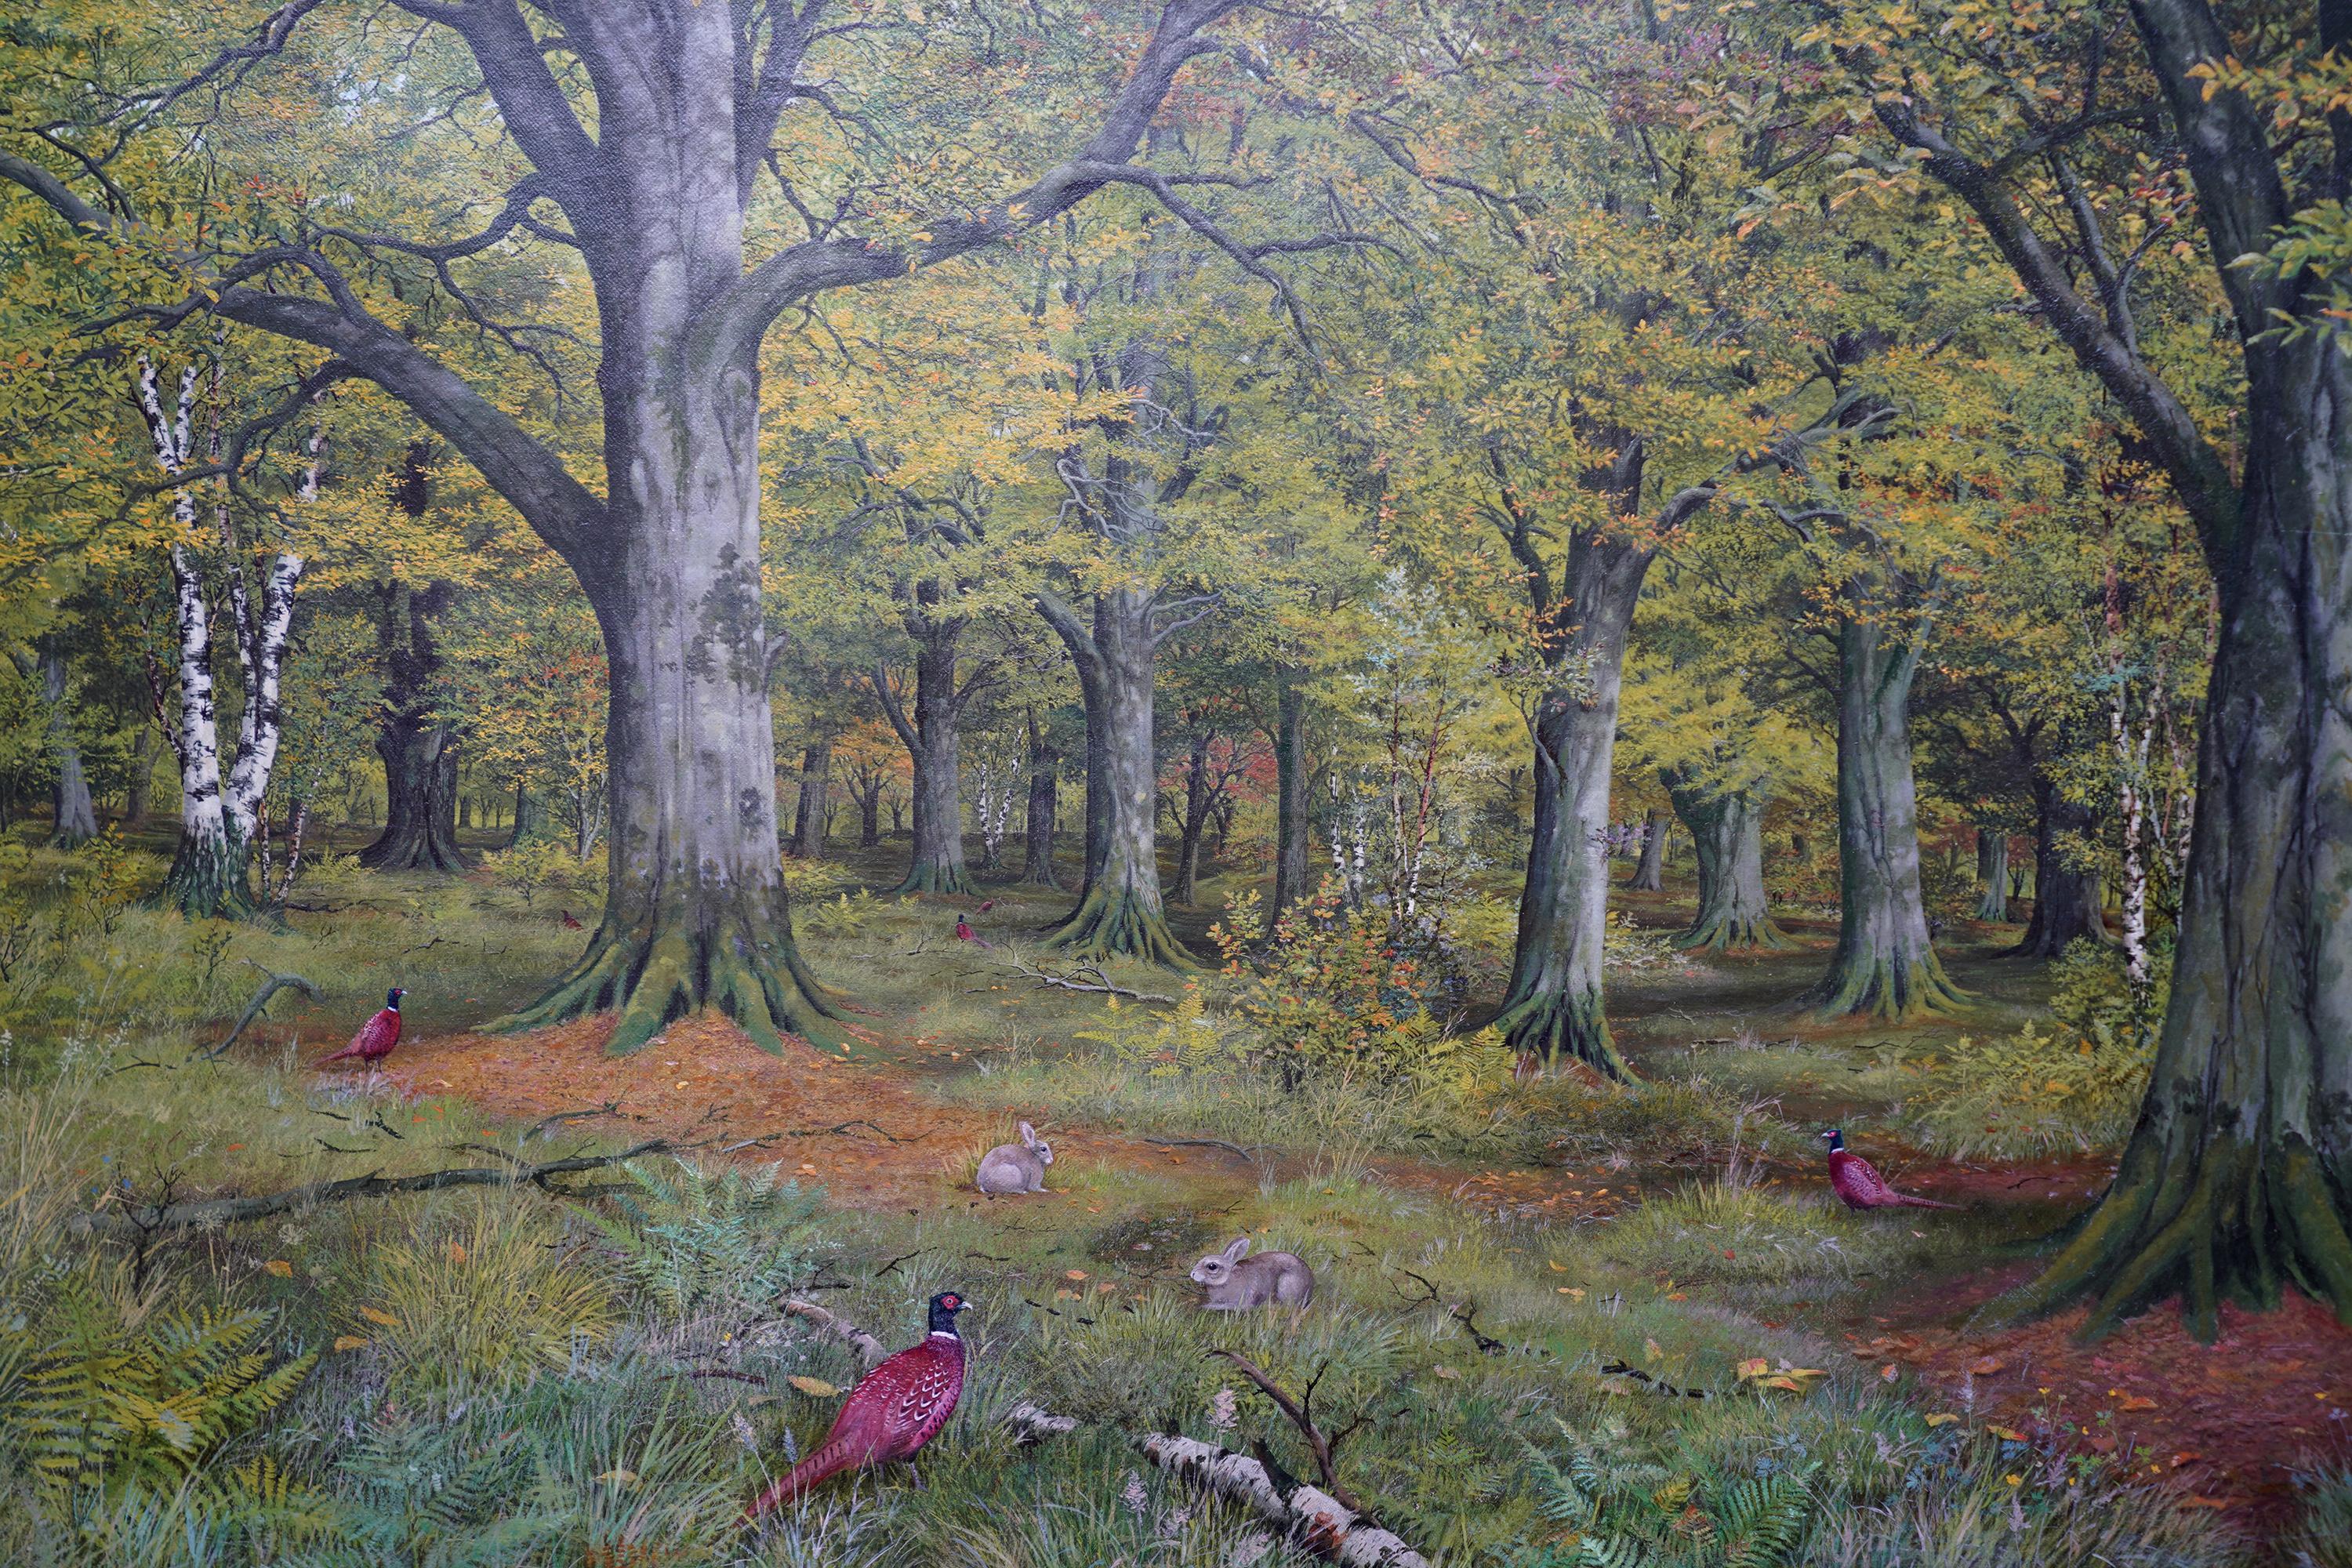 Dieses schöne schottische Ölgemälde einer viktorianischen Waldlandschaft stammt von dem bekannten schottischen Künstler John Reid. Es wurde 1880 in der Royal Scottish Academy gemalt und ausgestellt. Der Ort ist Morden oder Moredun Wood in Edinburgh.